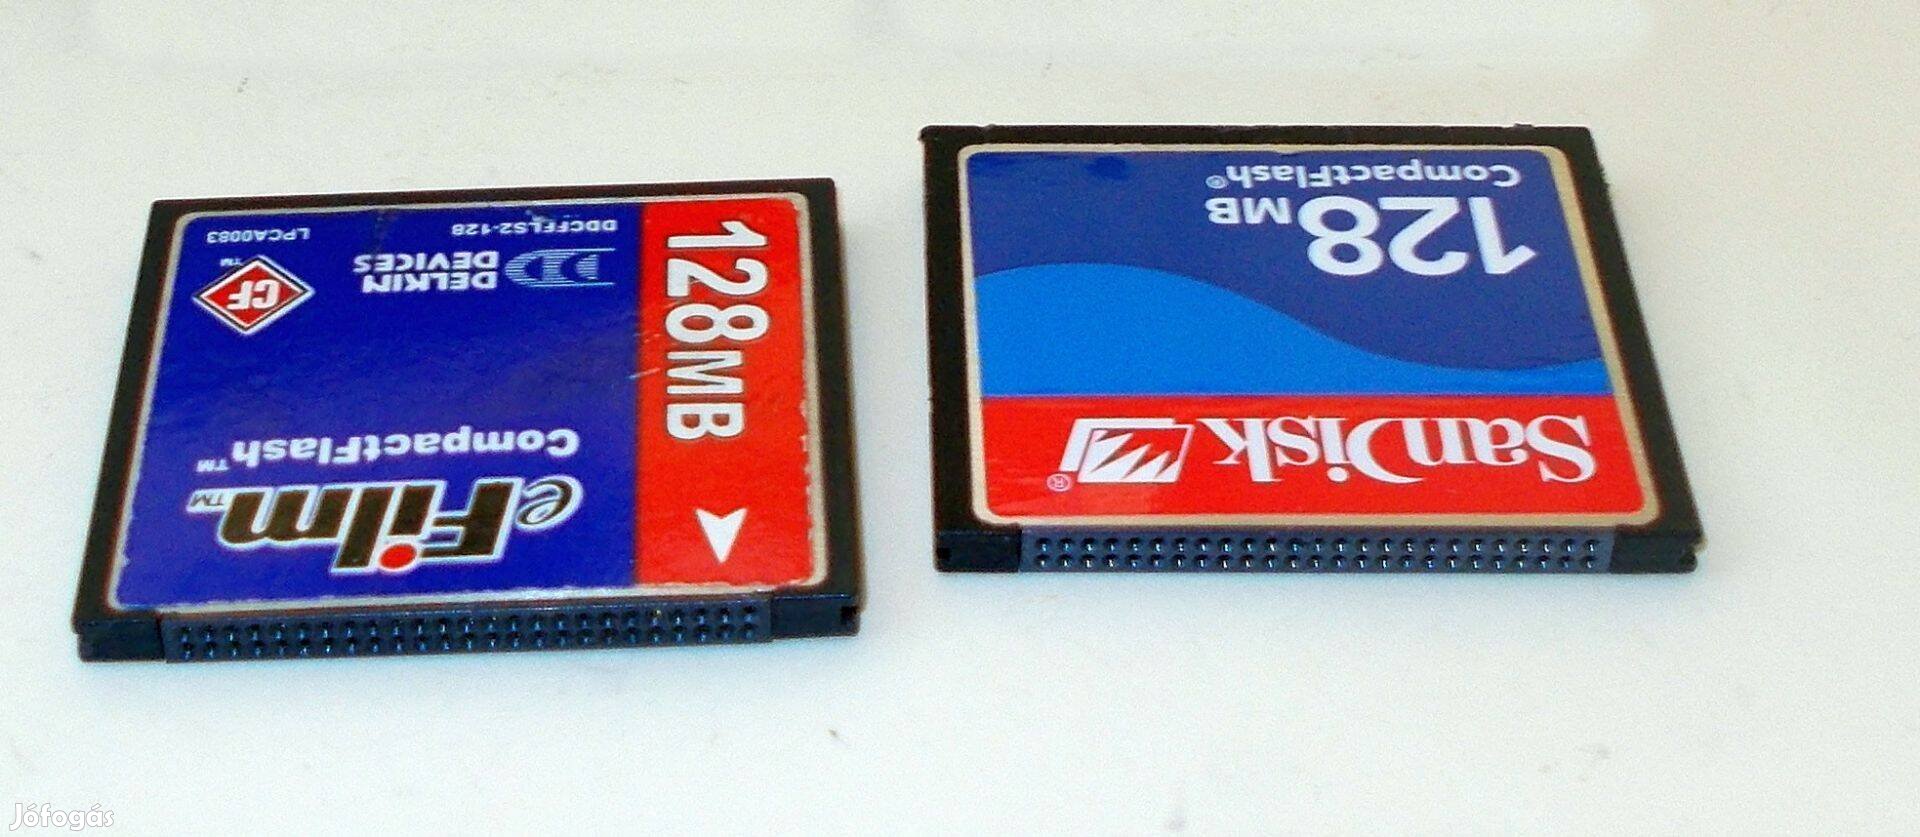 Compact Flash 128 Mb Memóriakártyák. 2900 Ft/Db